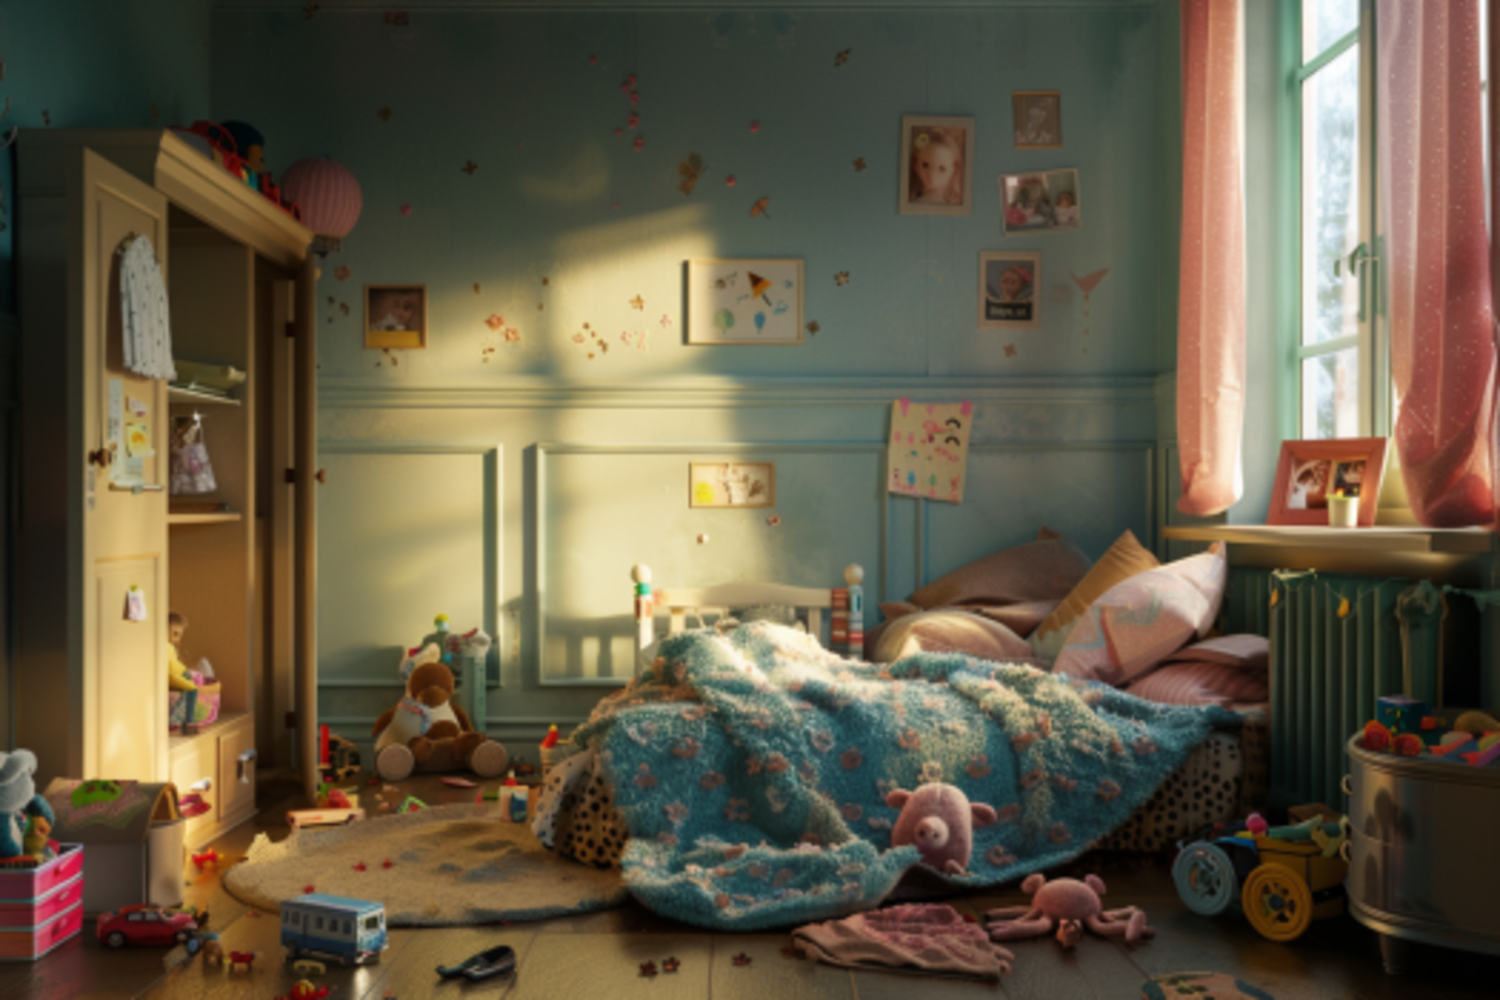 El dormitorio desordenado de una niña | Fuente: Midjourney